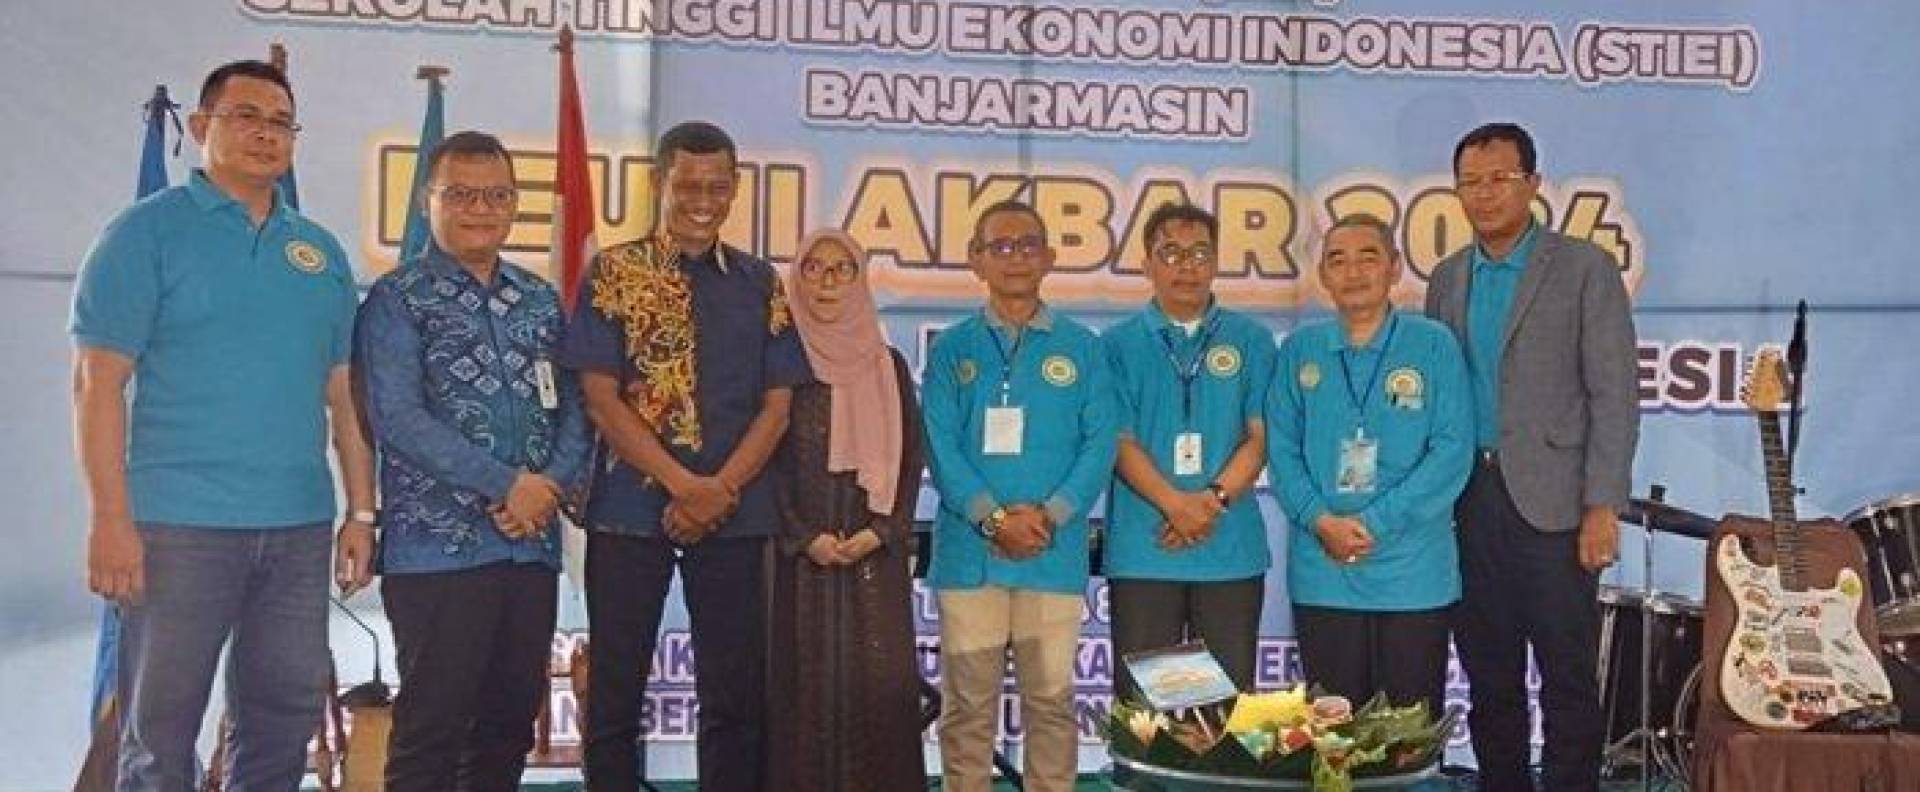 Reuni Akbar STIE Indonesia Banjarmasin tak Hanya Bertemu Antar Alumni, Juga Ada Kegiatan Sosial